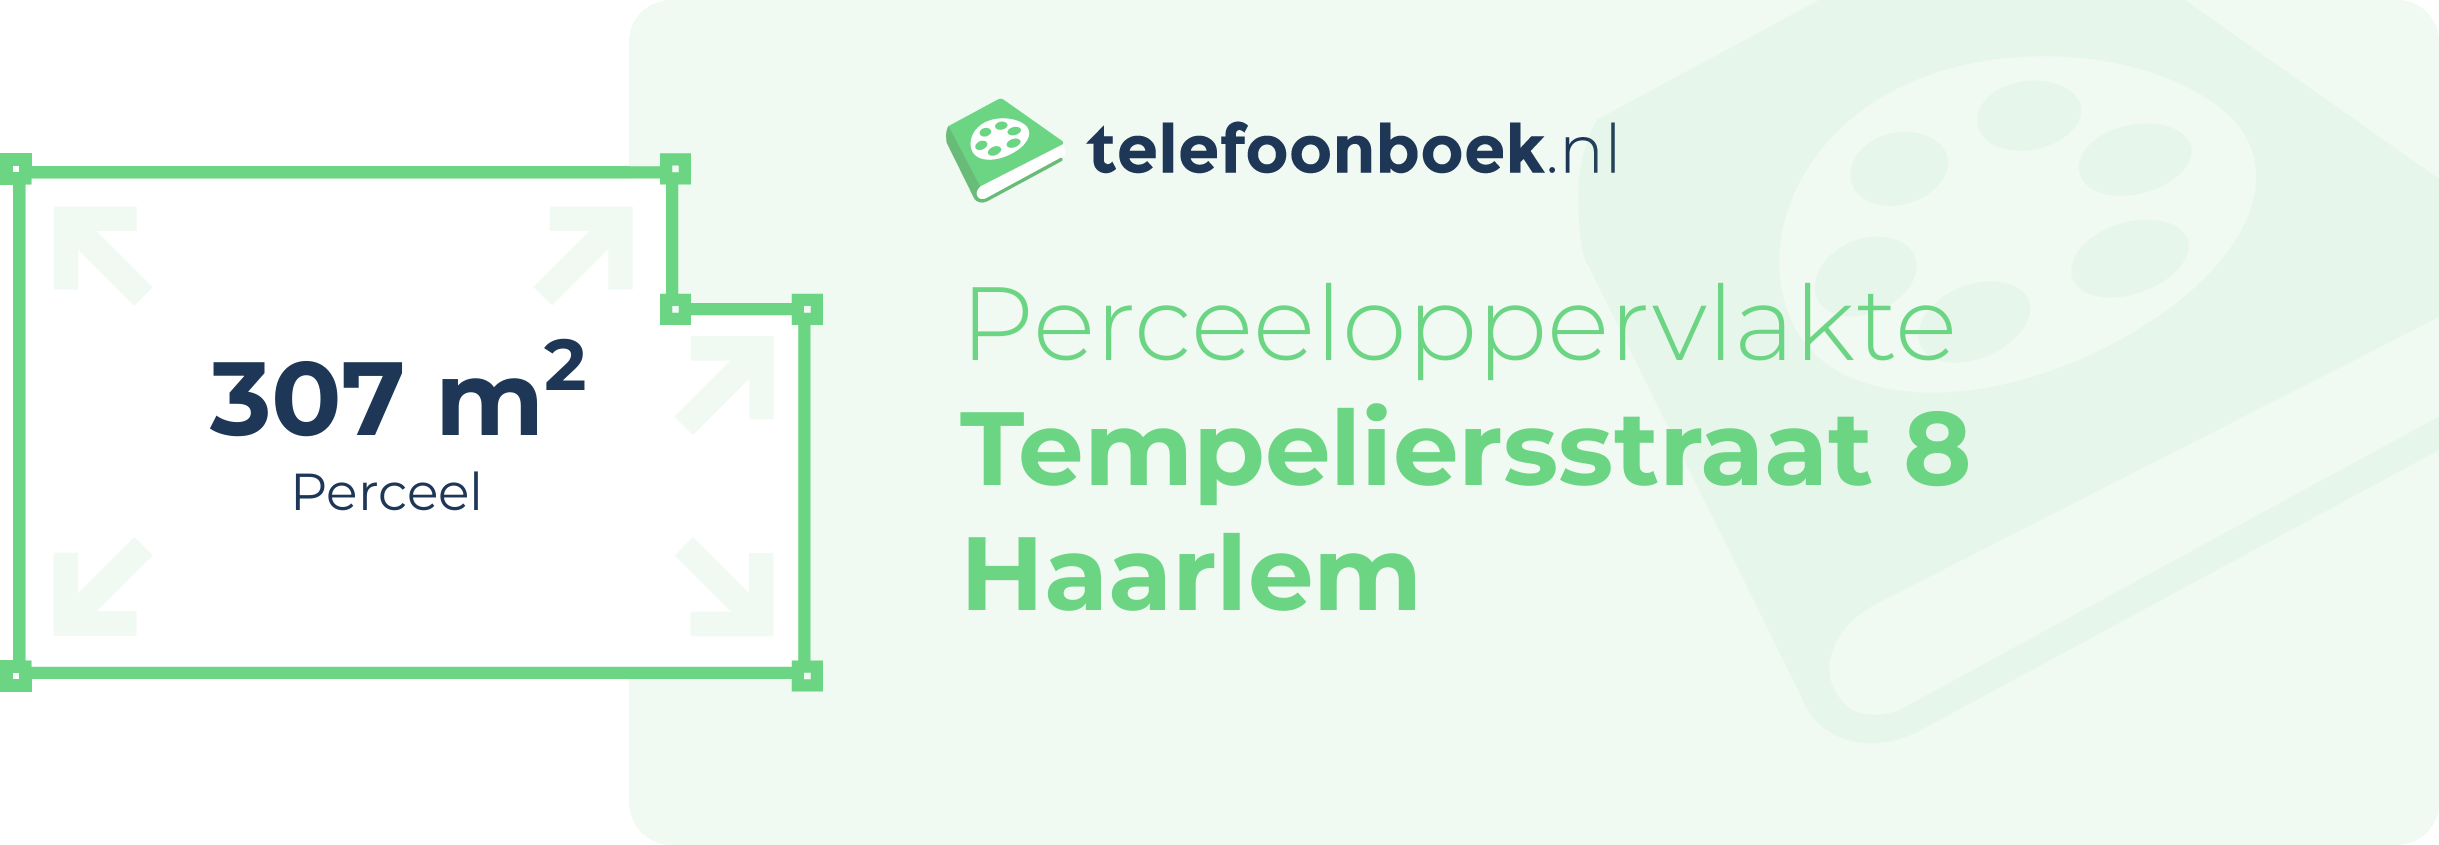 Perceeloppervlakte Tempeliersstraat 8 Haarlem